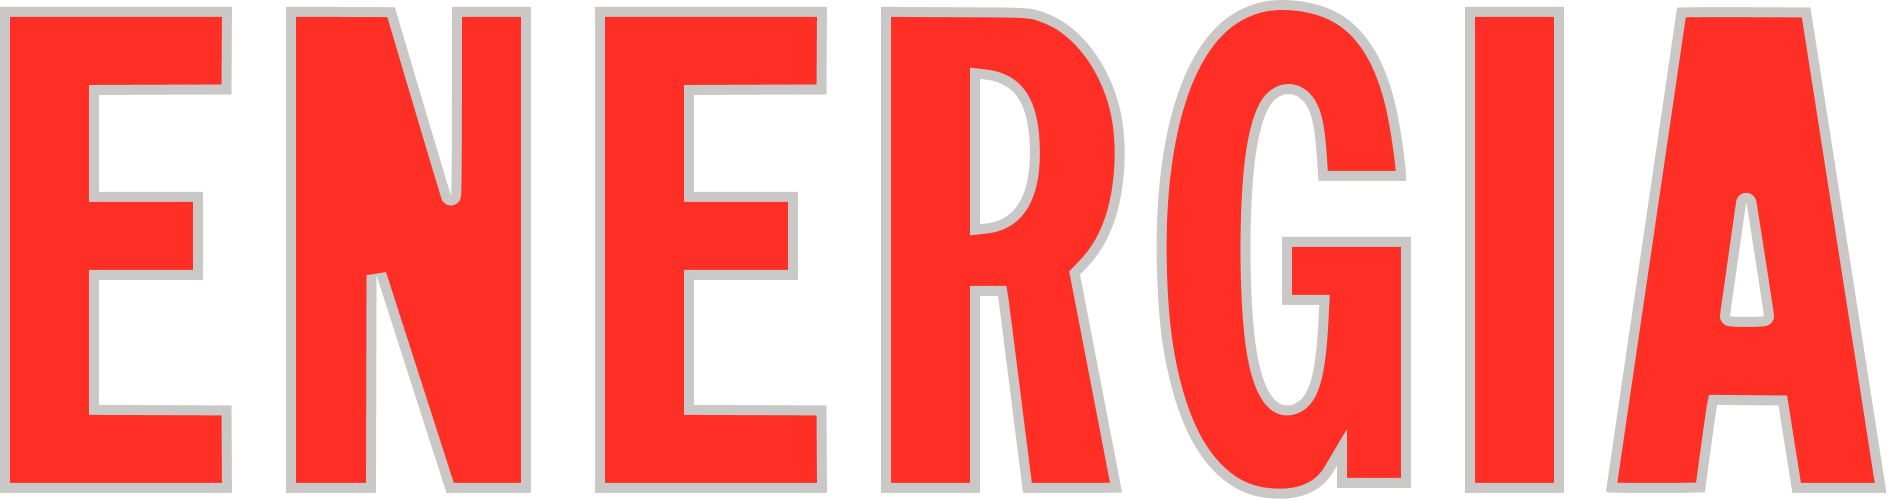 Логотип Energia